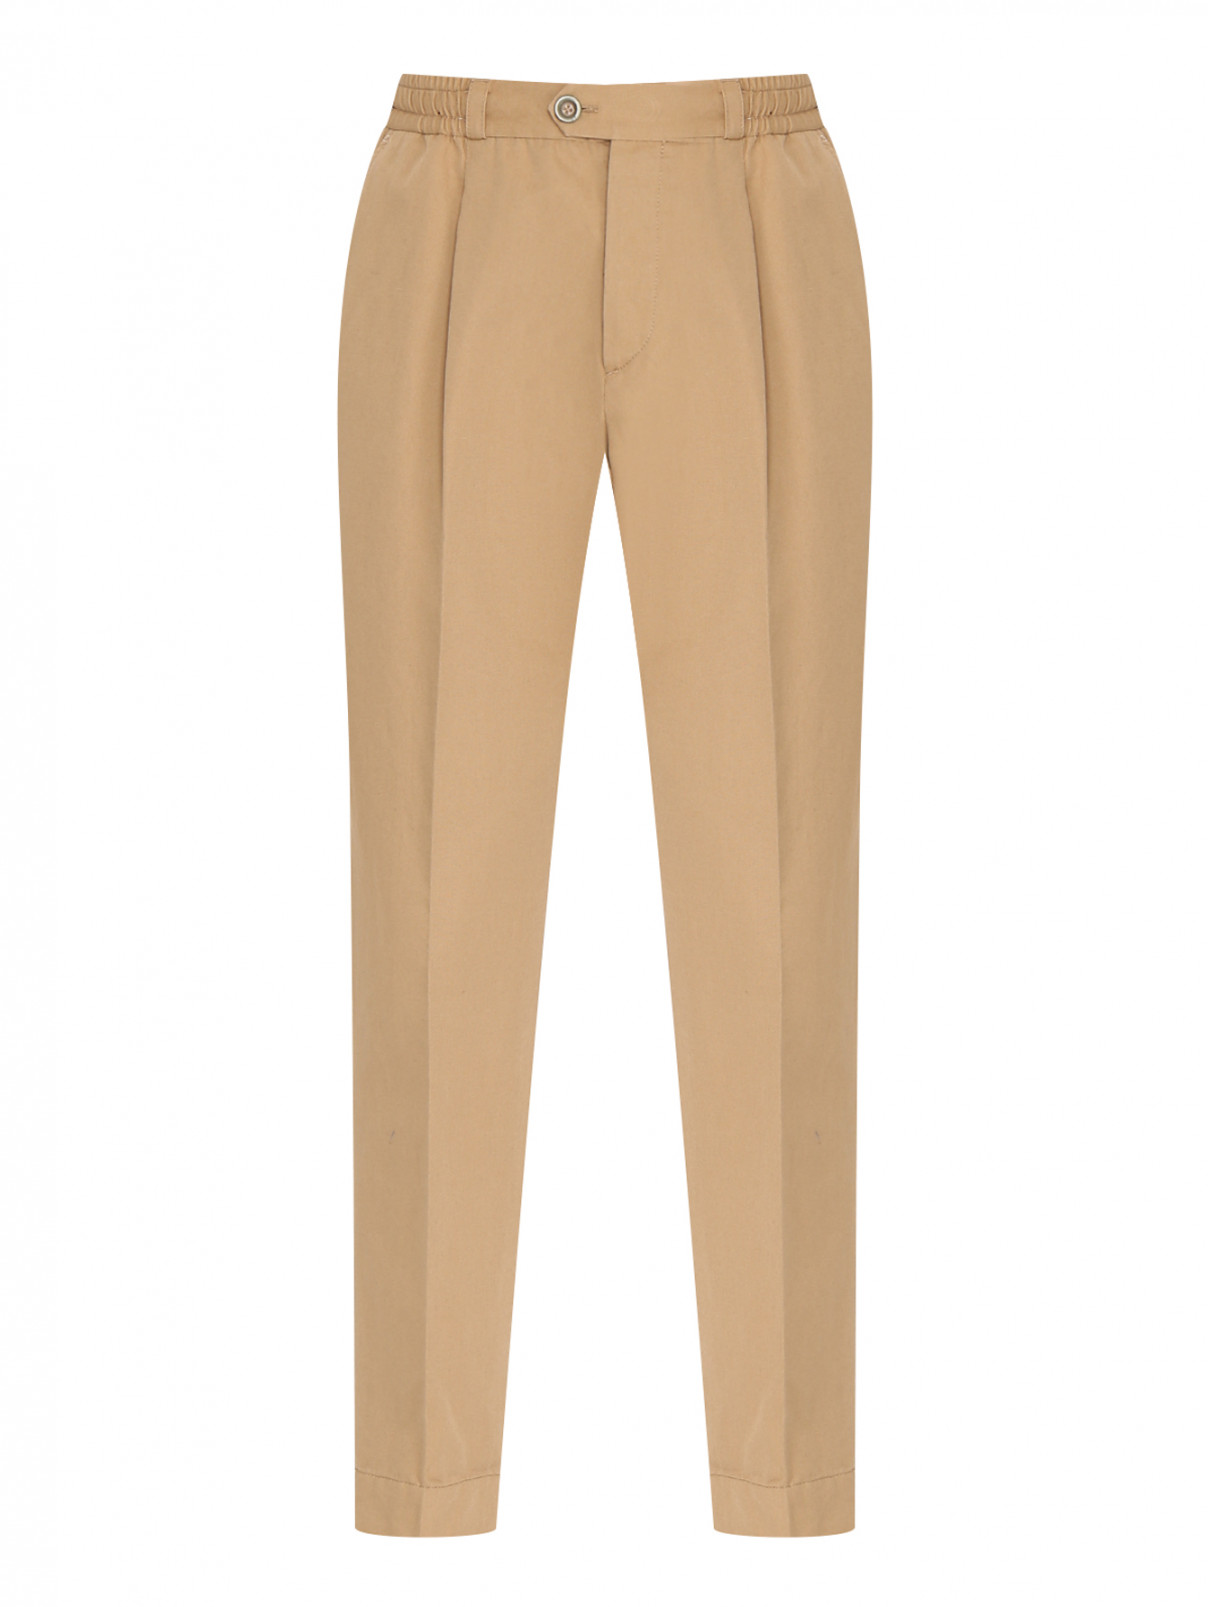 Однотонные брюки из смеси хлопка и льна PT Torino  –  Общий вид  – Цвет:  Желтый